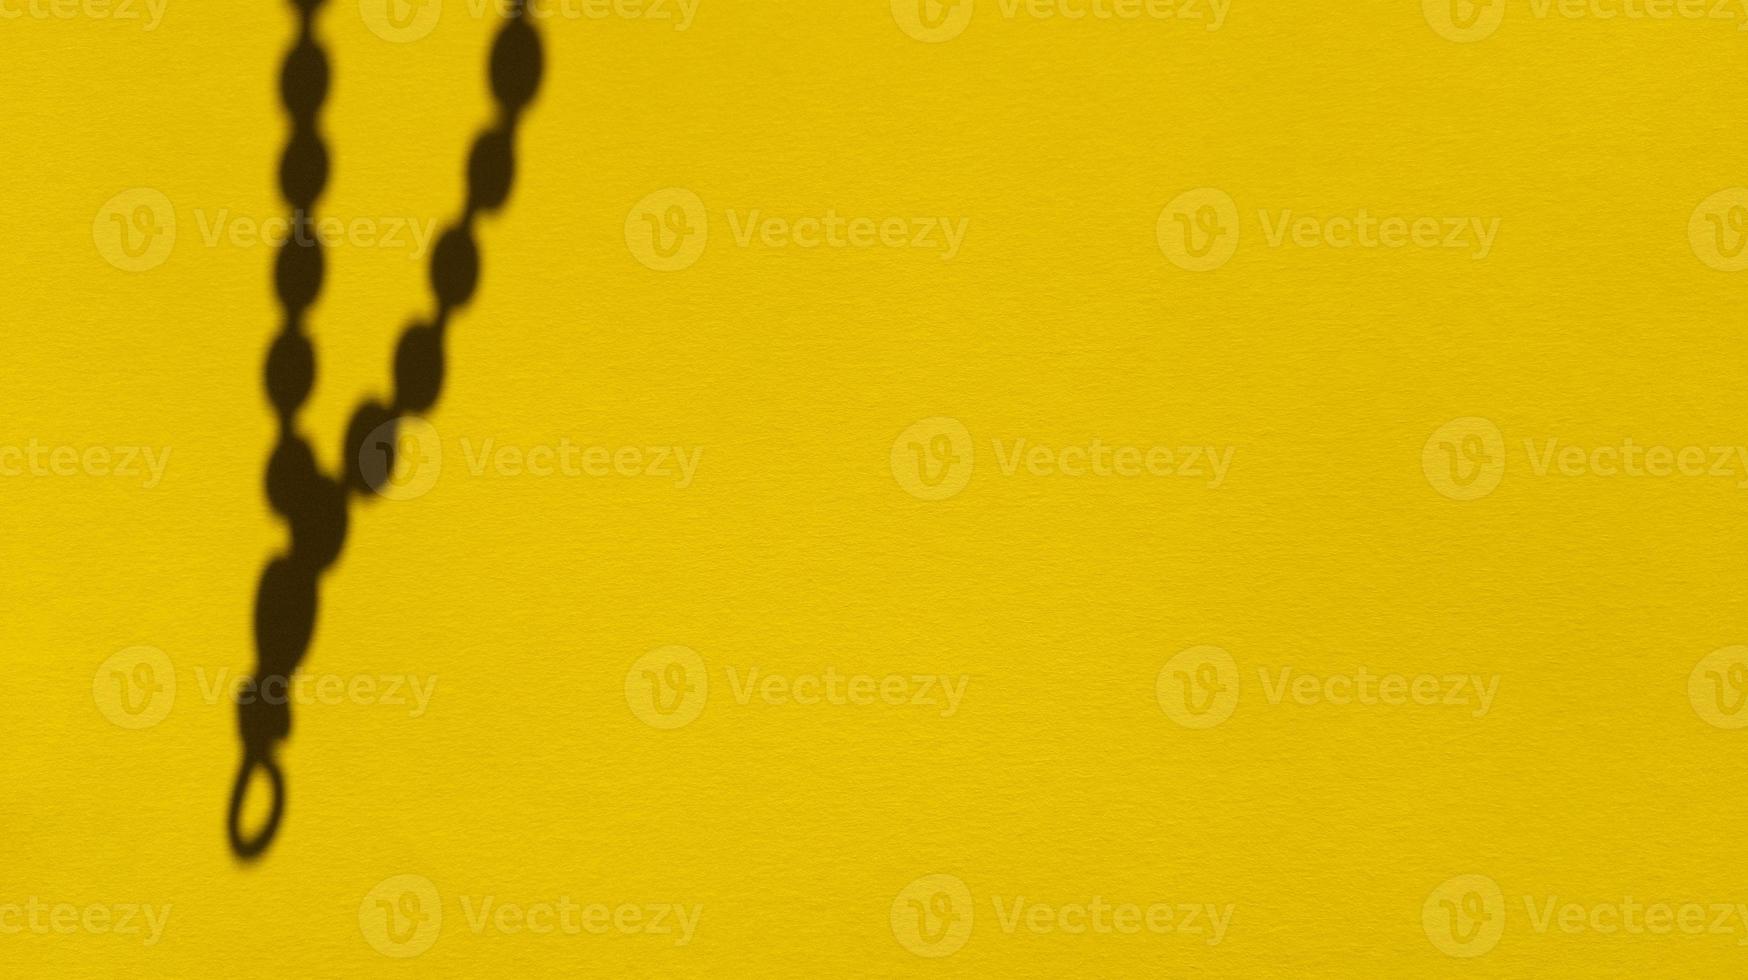 japa contas sombras em papel pastel amarelo backgorund fotografia foto